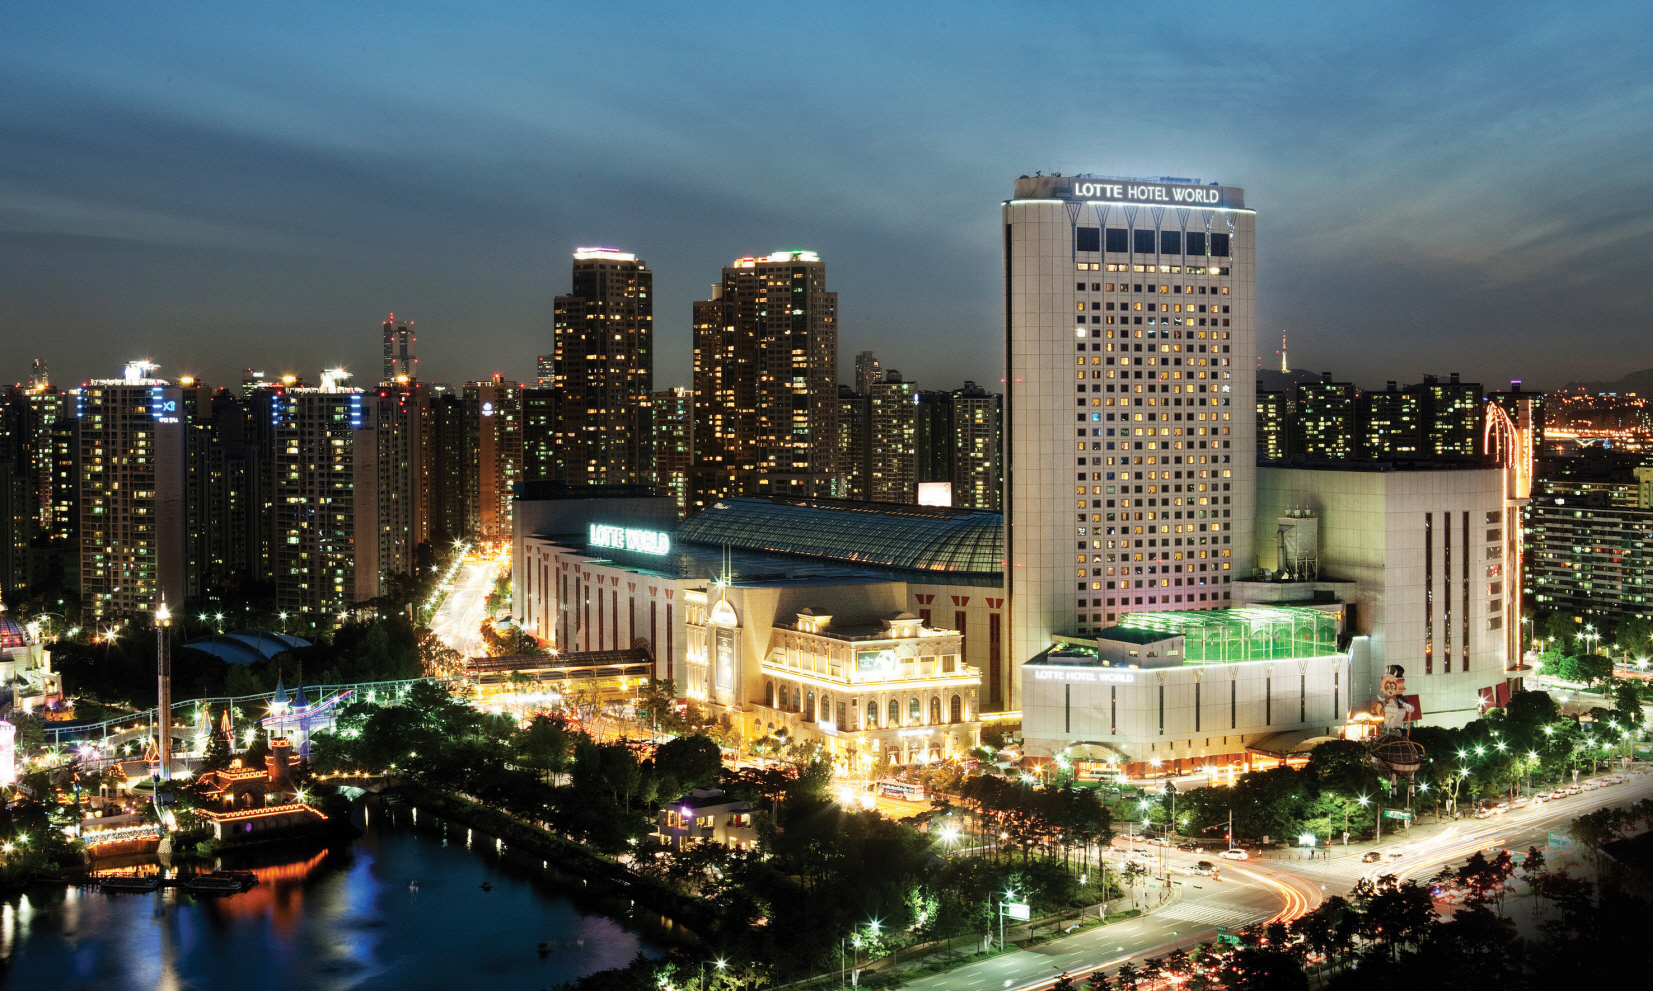  Seoul  s Lotte Hotel  expansion incorporates Symetrix SymNet 